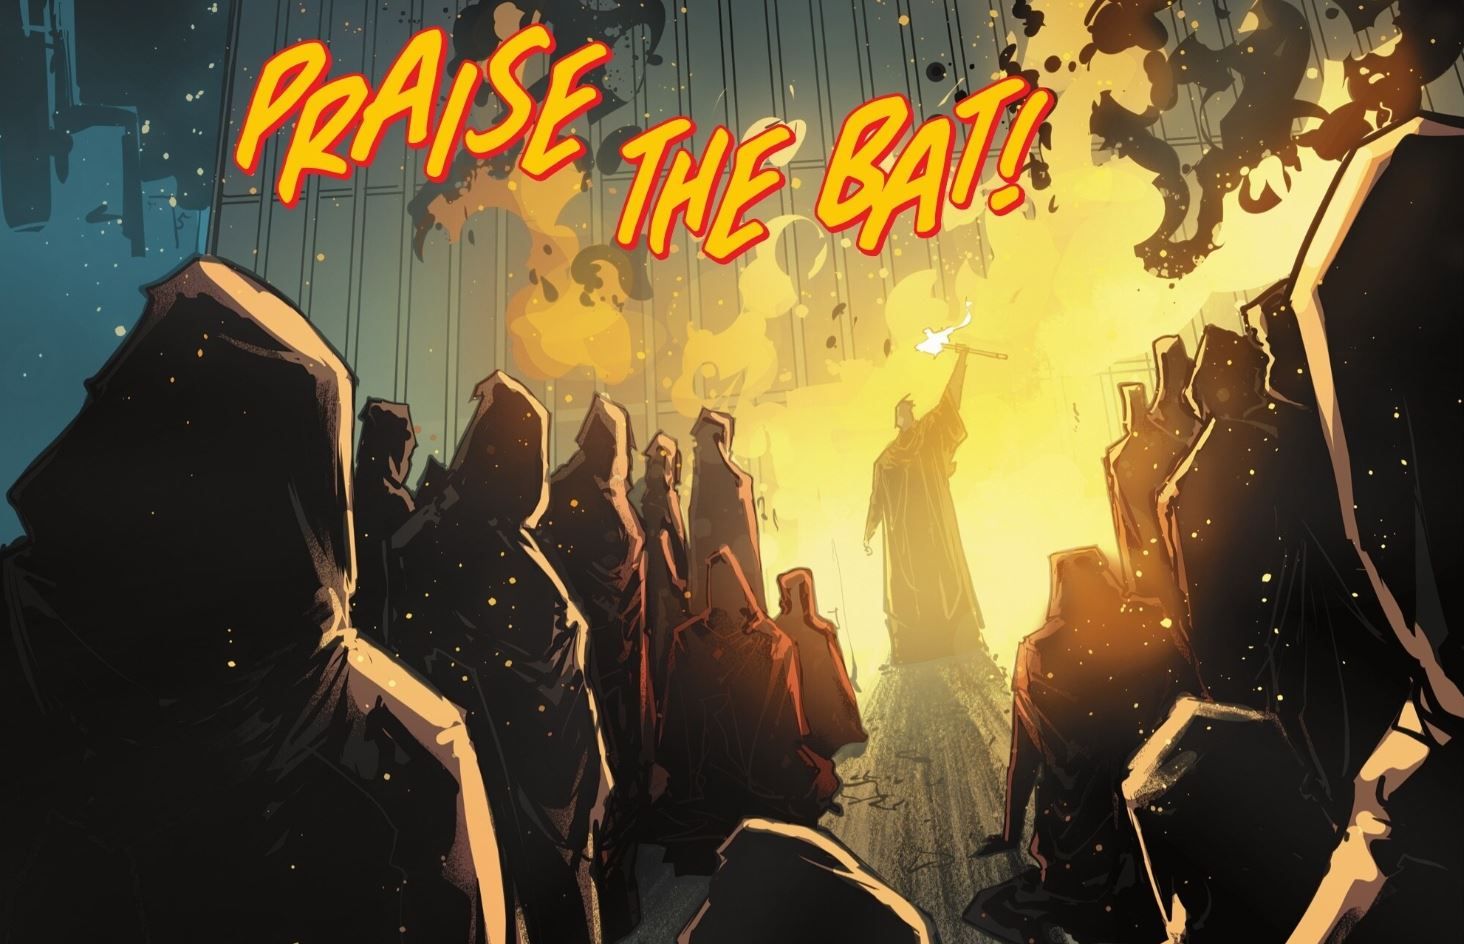 Man-Bat's Cult Praises Him DC